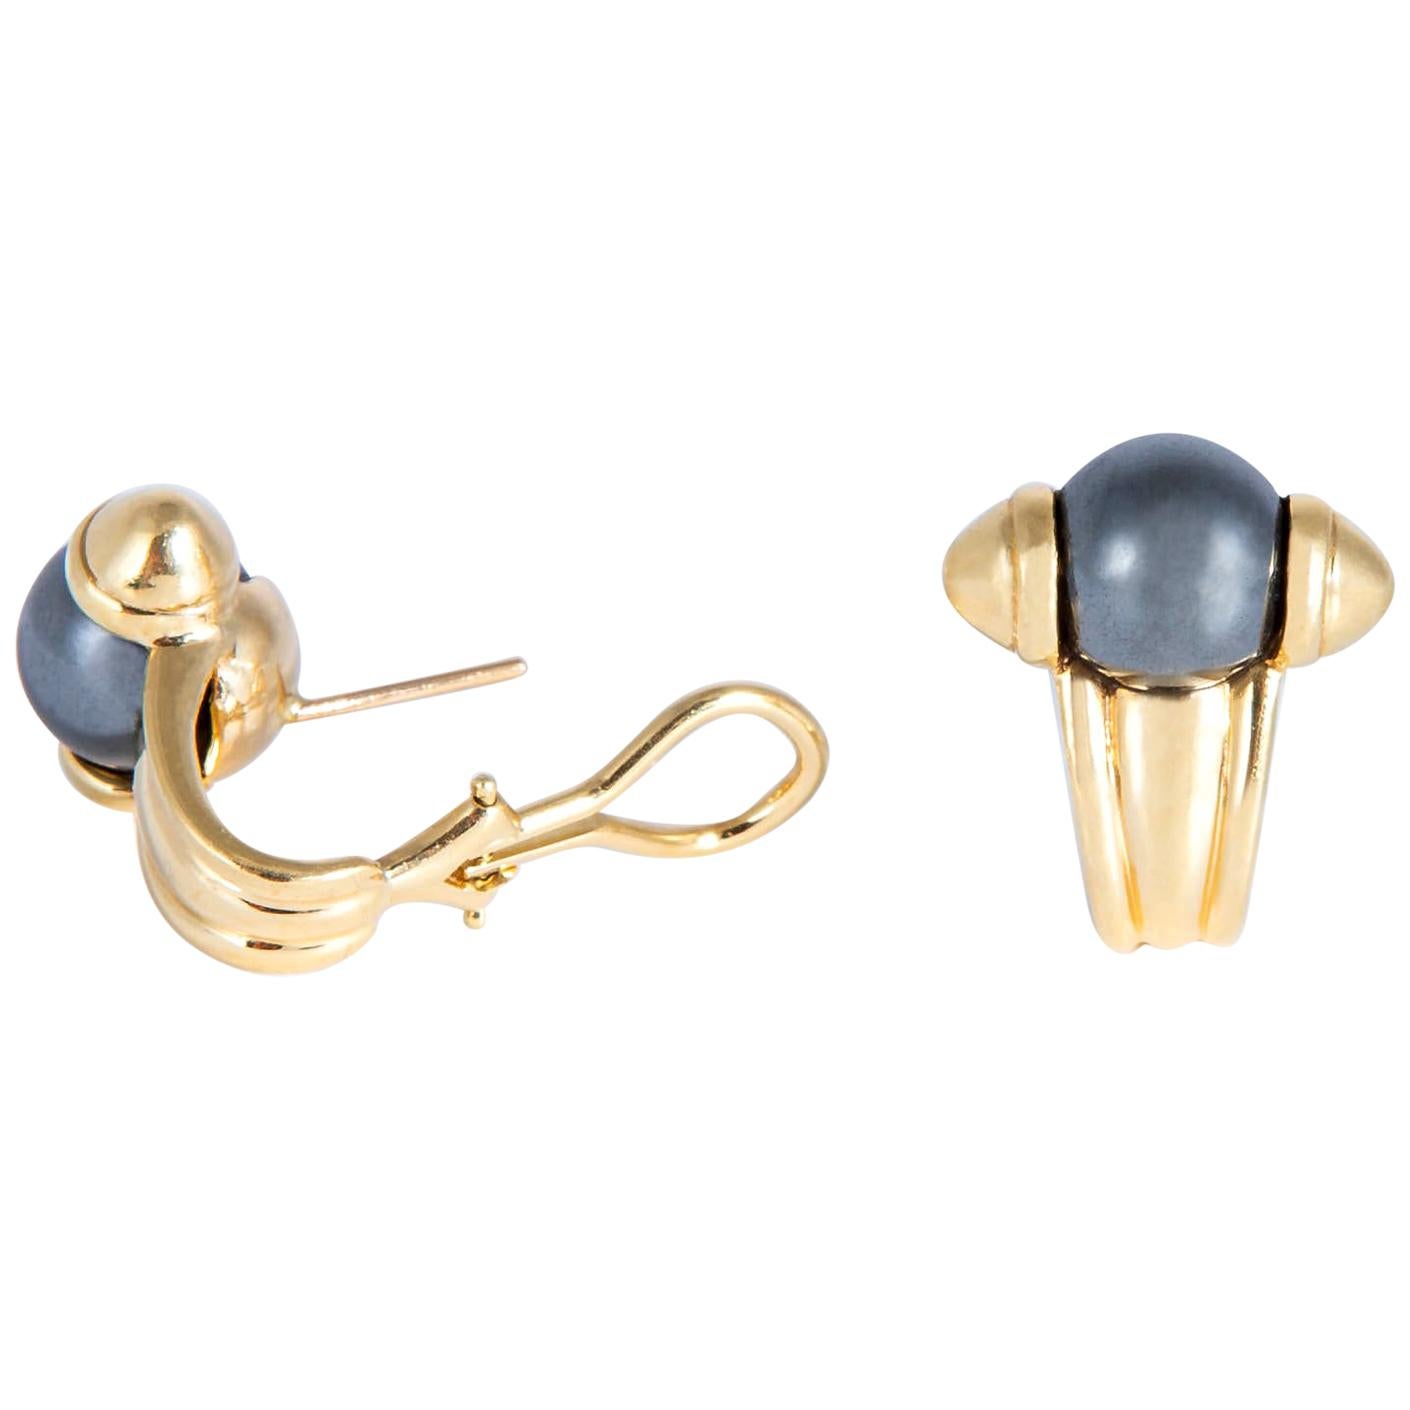 Elegant Hematite and Gold Earrings